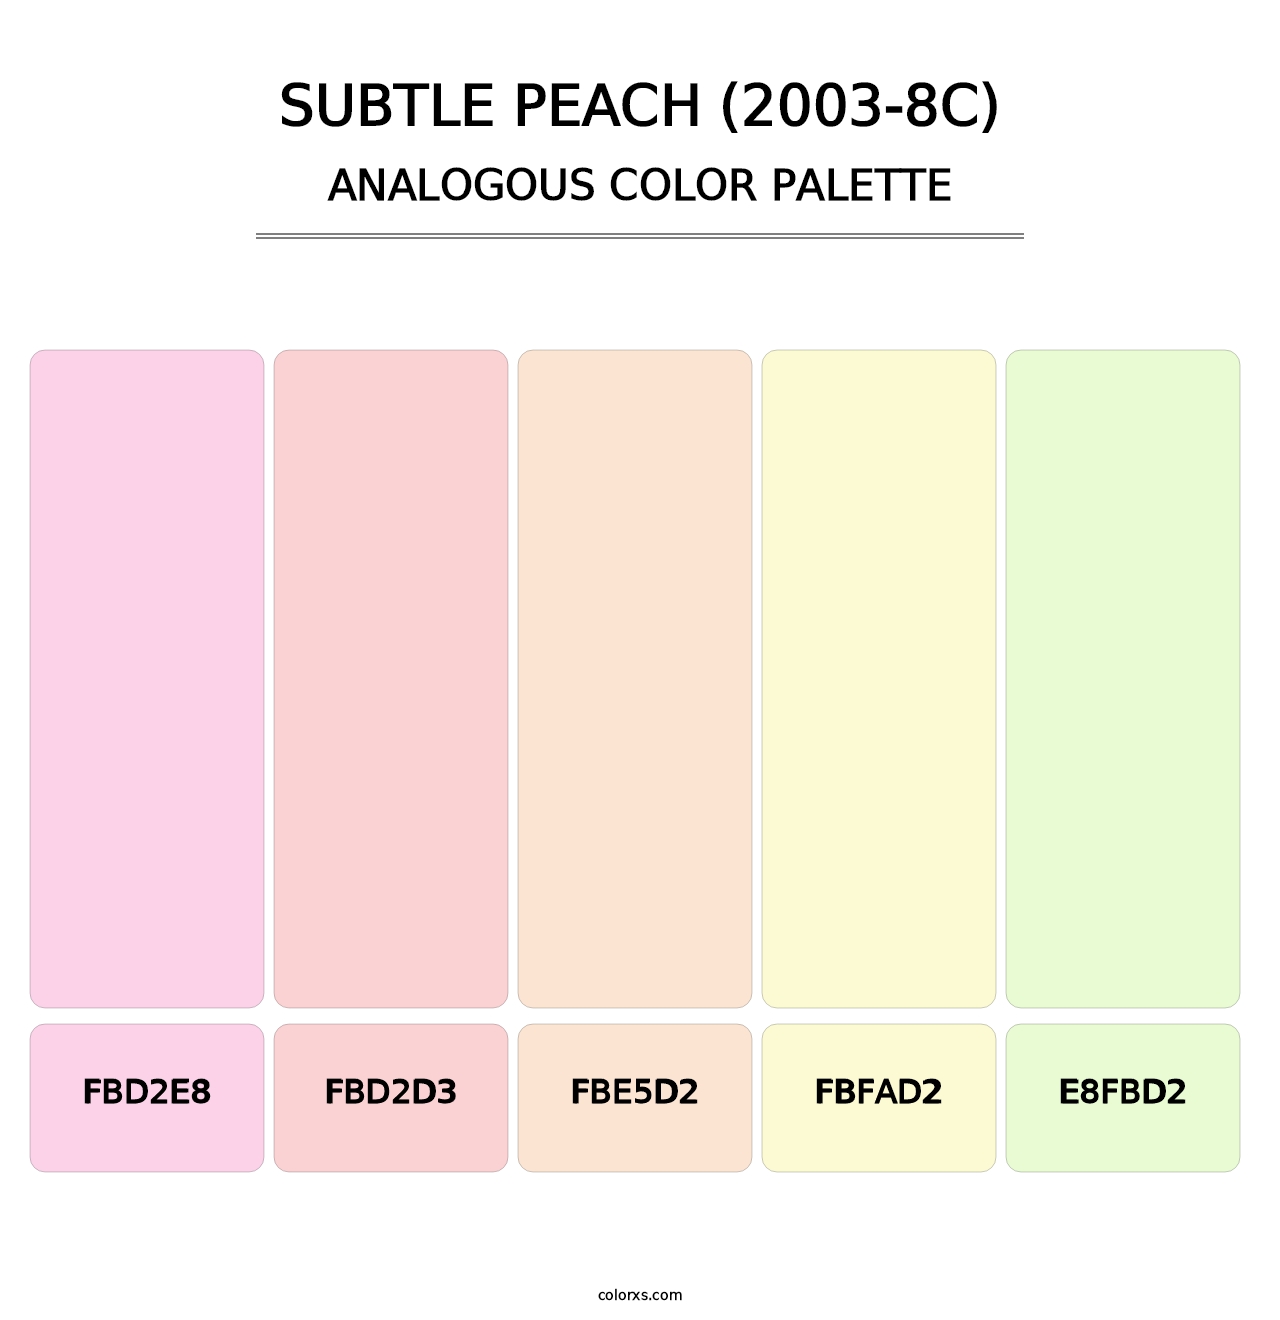 Subtle Peach (2003-8C) - Analogous Color Palette